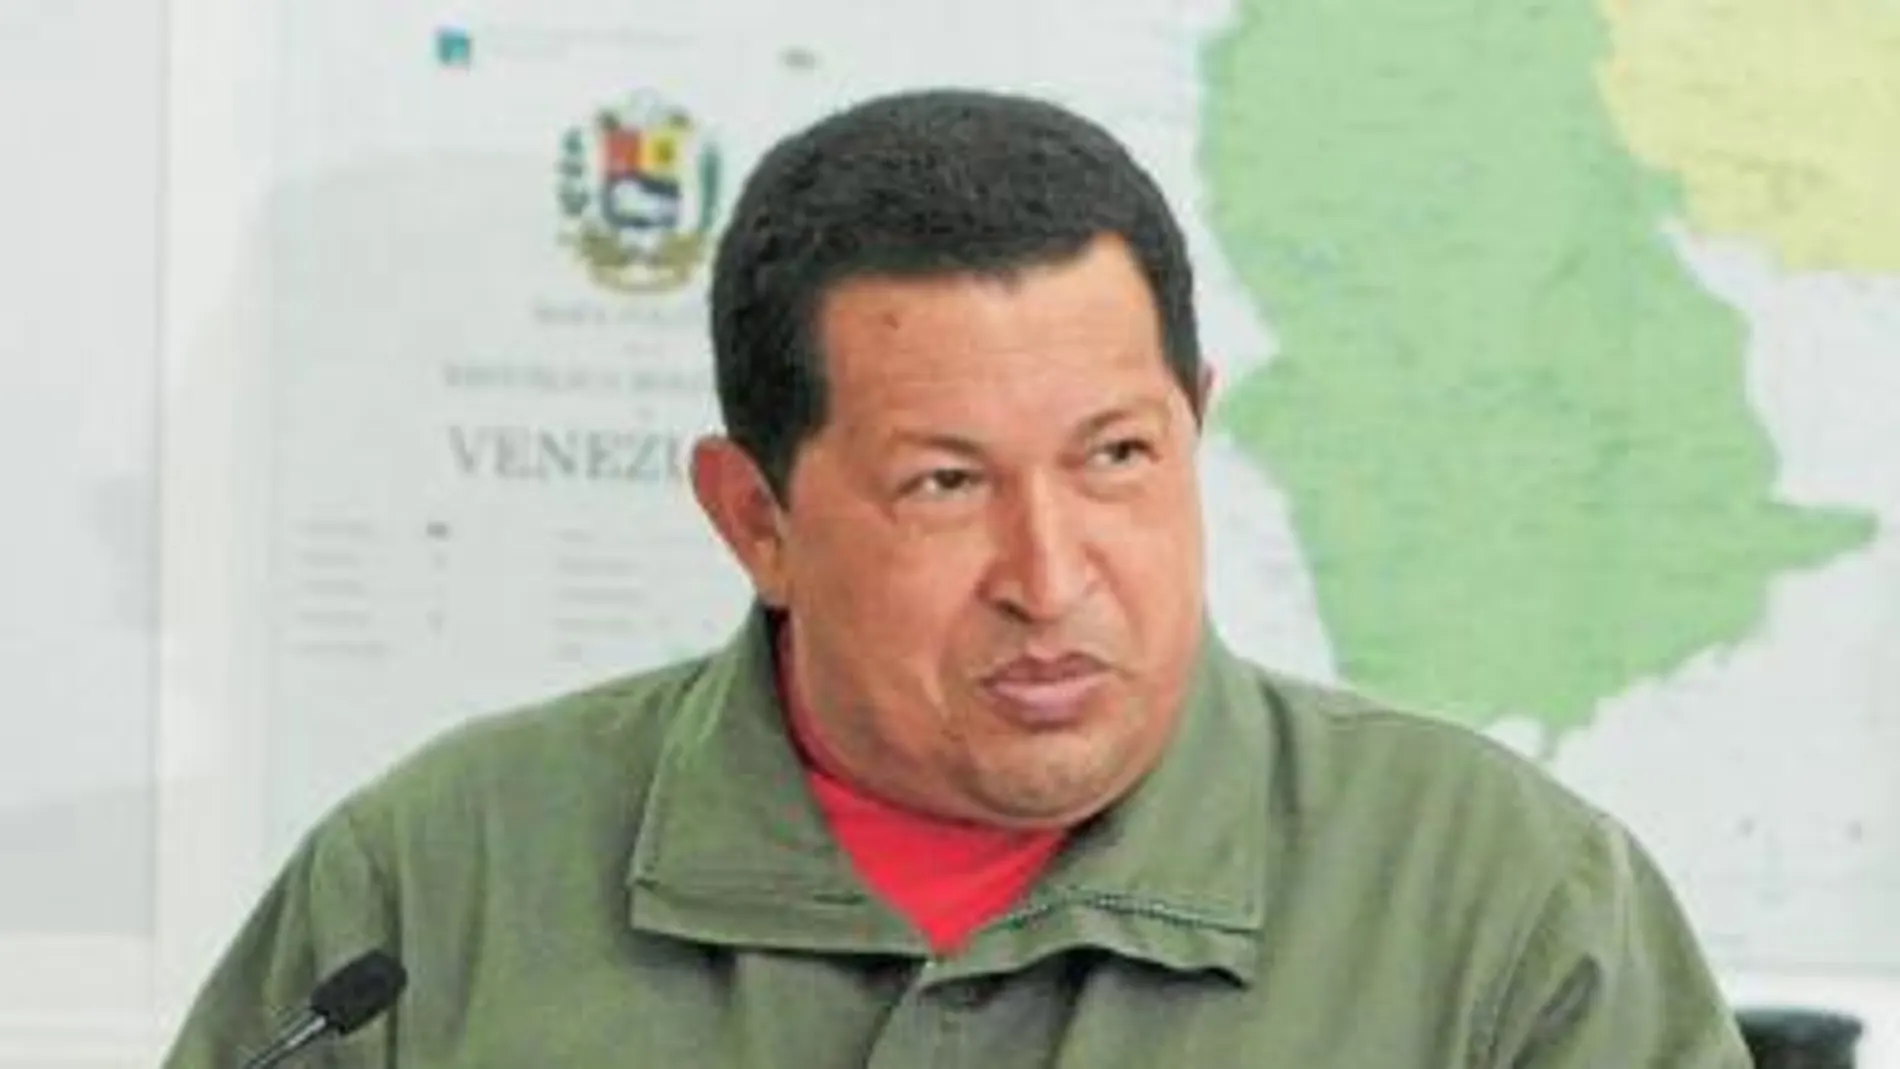 Chávez opta por endeudarse para combatir la crisis eL EJÉRCITO TOMA LOS PUERTOS Y AEROPUERTOS EN VENEZUELA